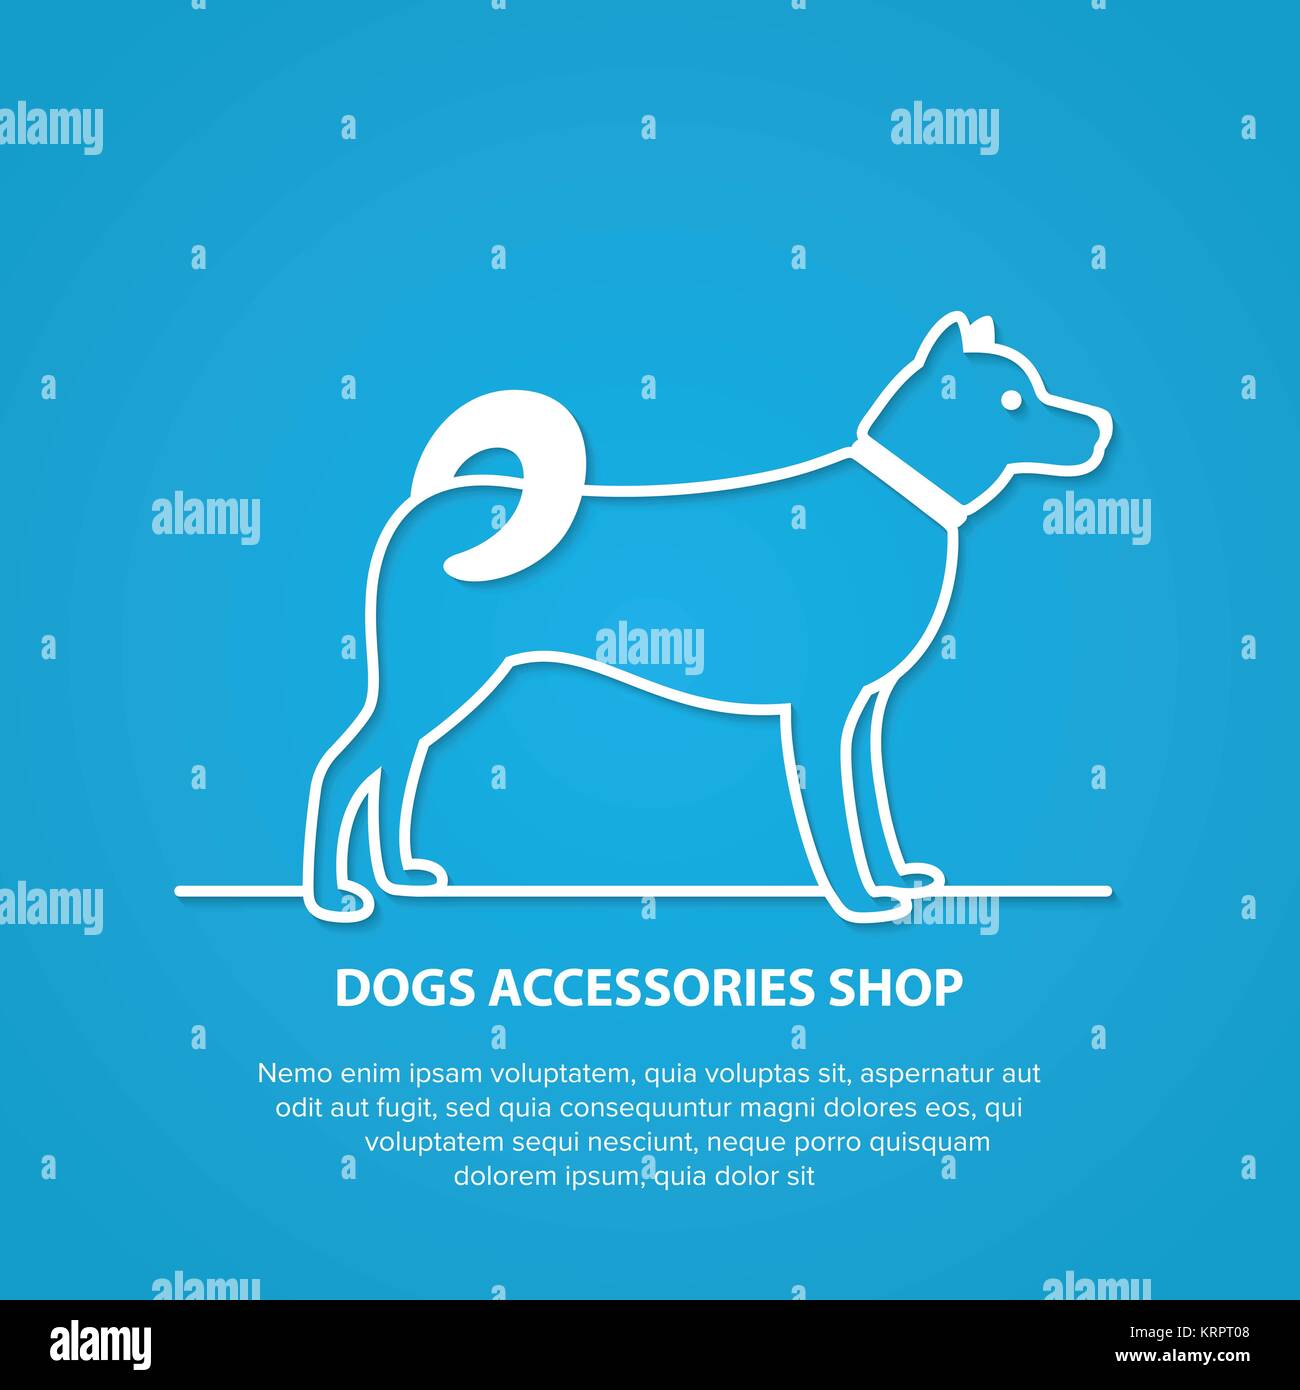 Vektor Kontur Hund Silhouette auf weißem Hintergrund. Hunde Zubehör shop Logo. Stock Vektor